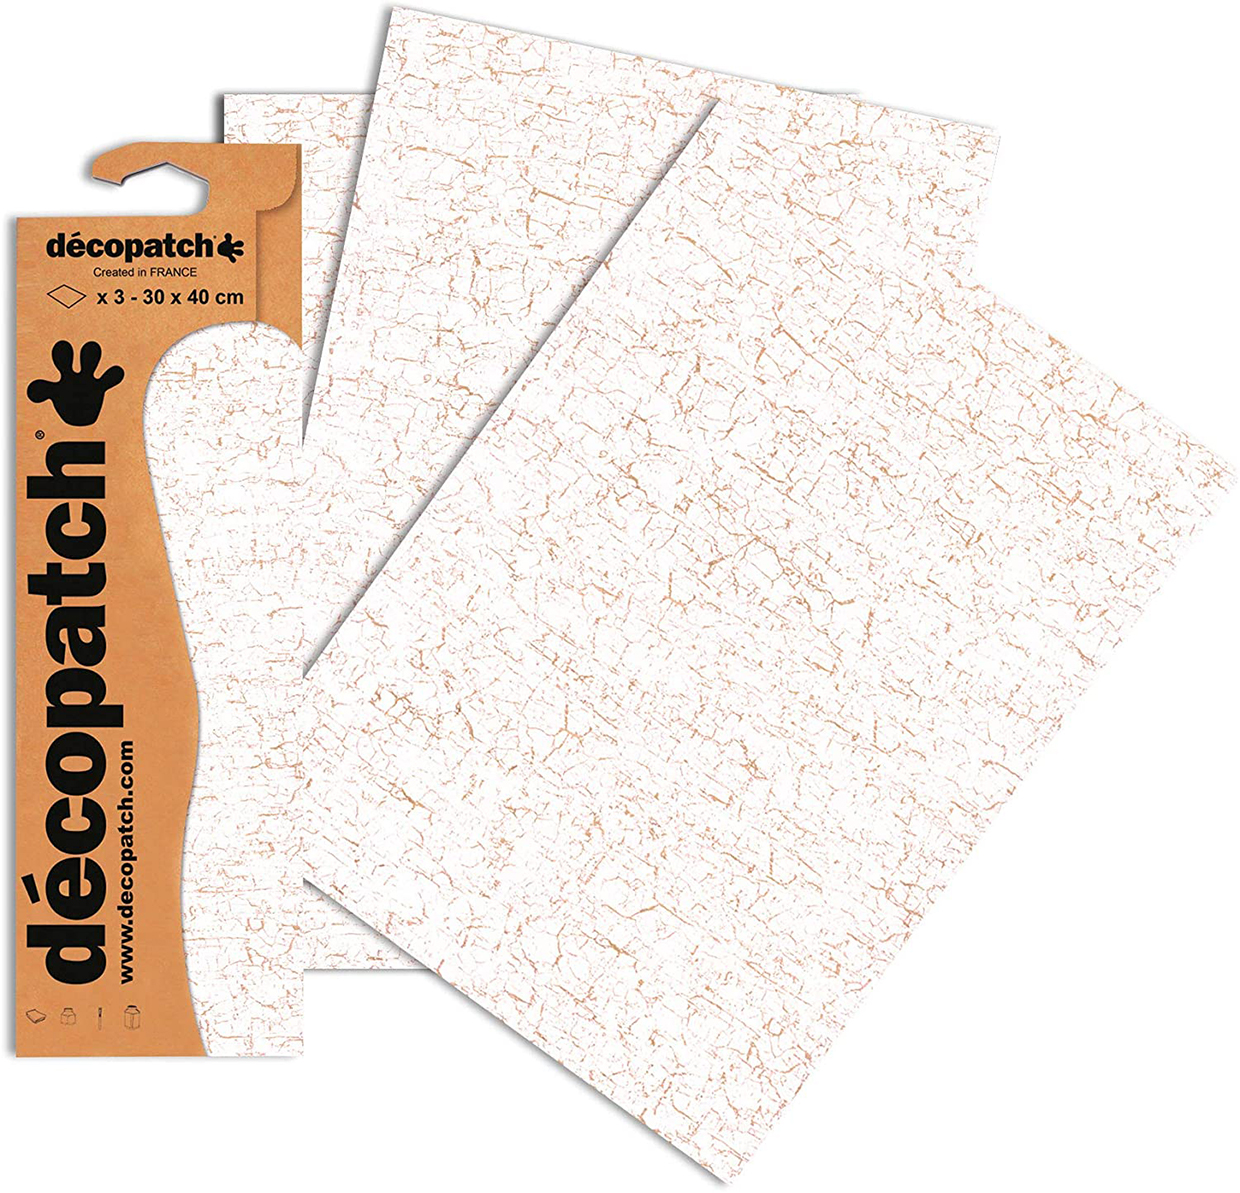 crackle decoupage paper